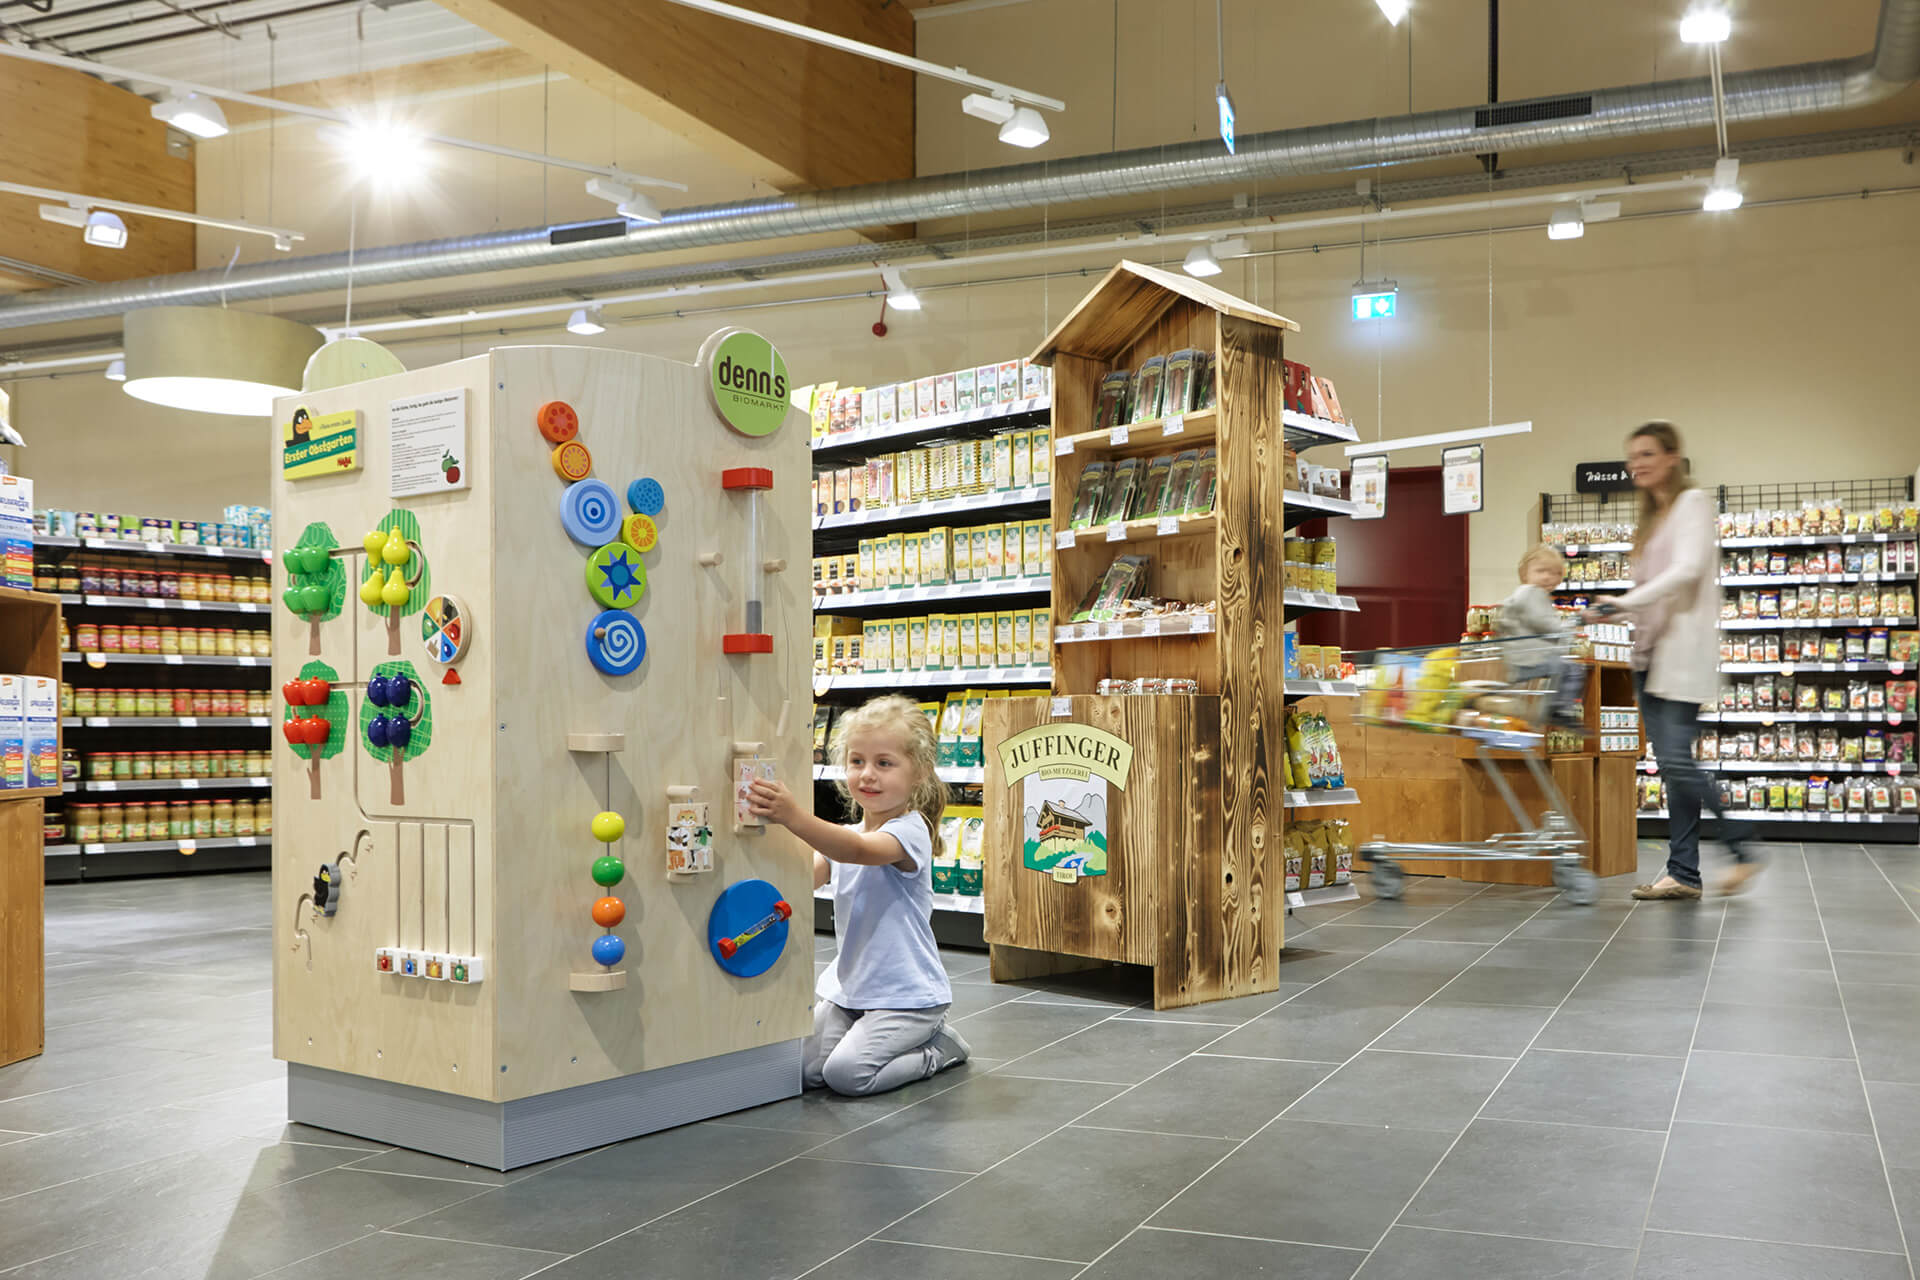 Retail | 2 | Ziele und Bedürfnisse | Kind kniet vor einem großen Spielwürfel, der im Supermarkt steht